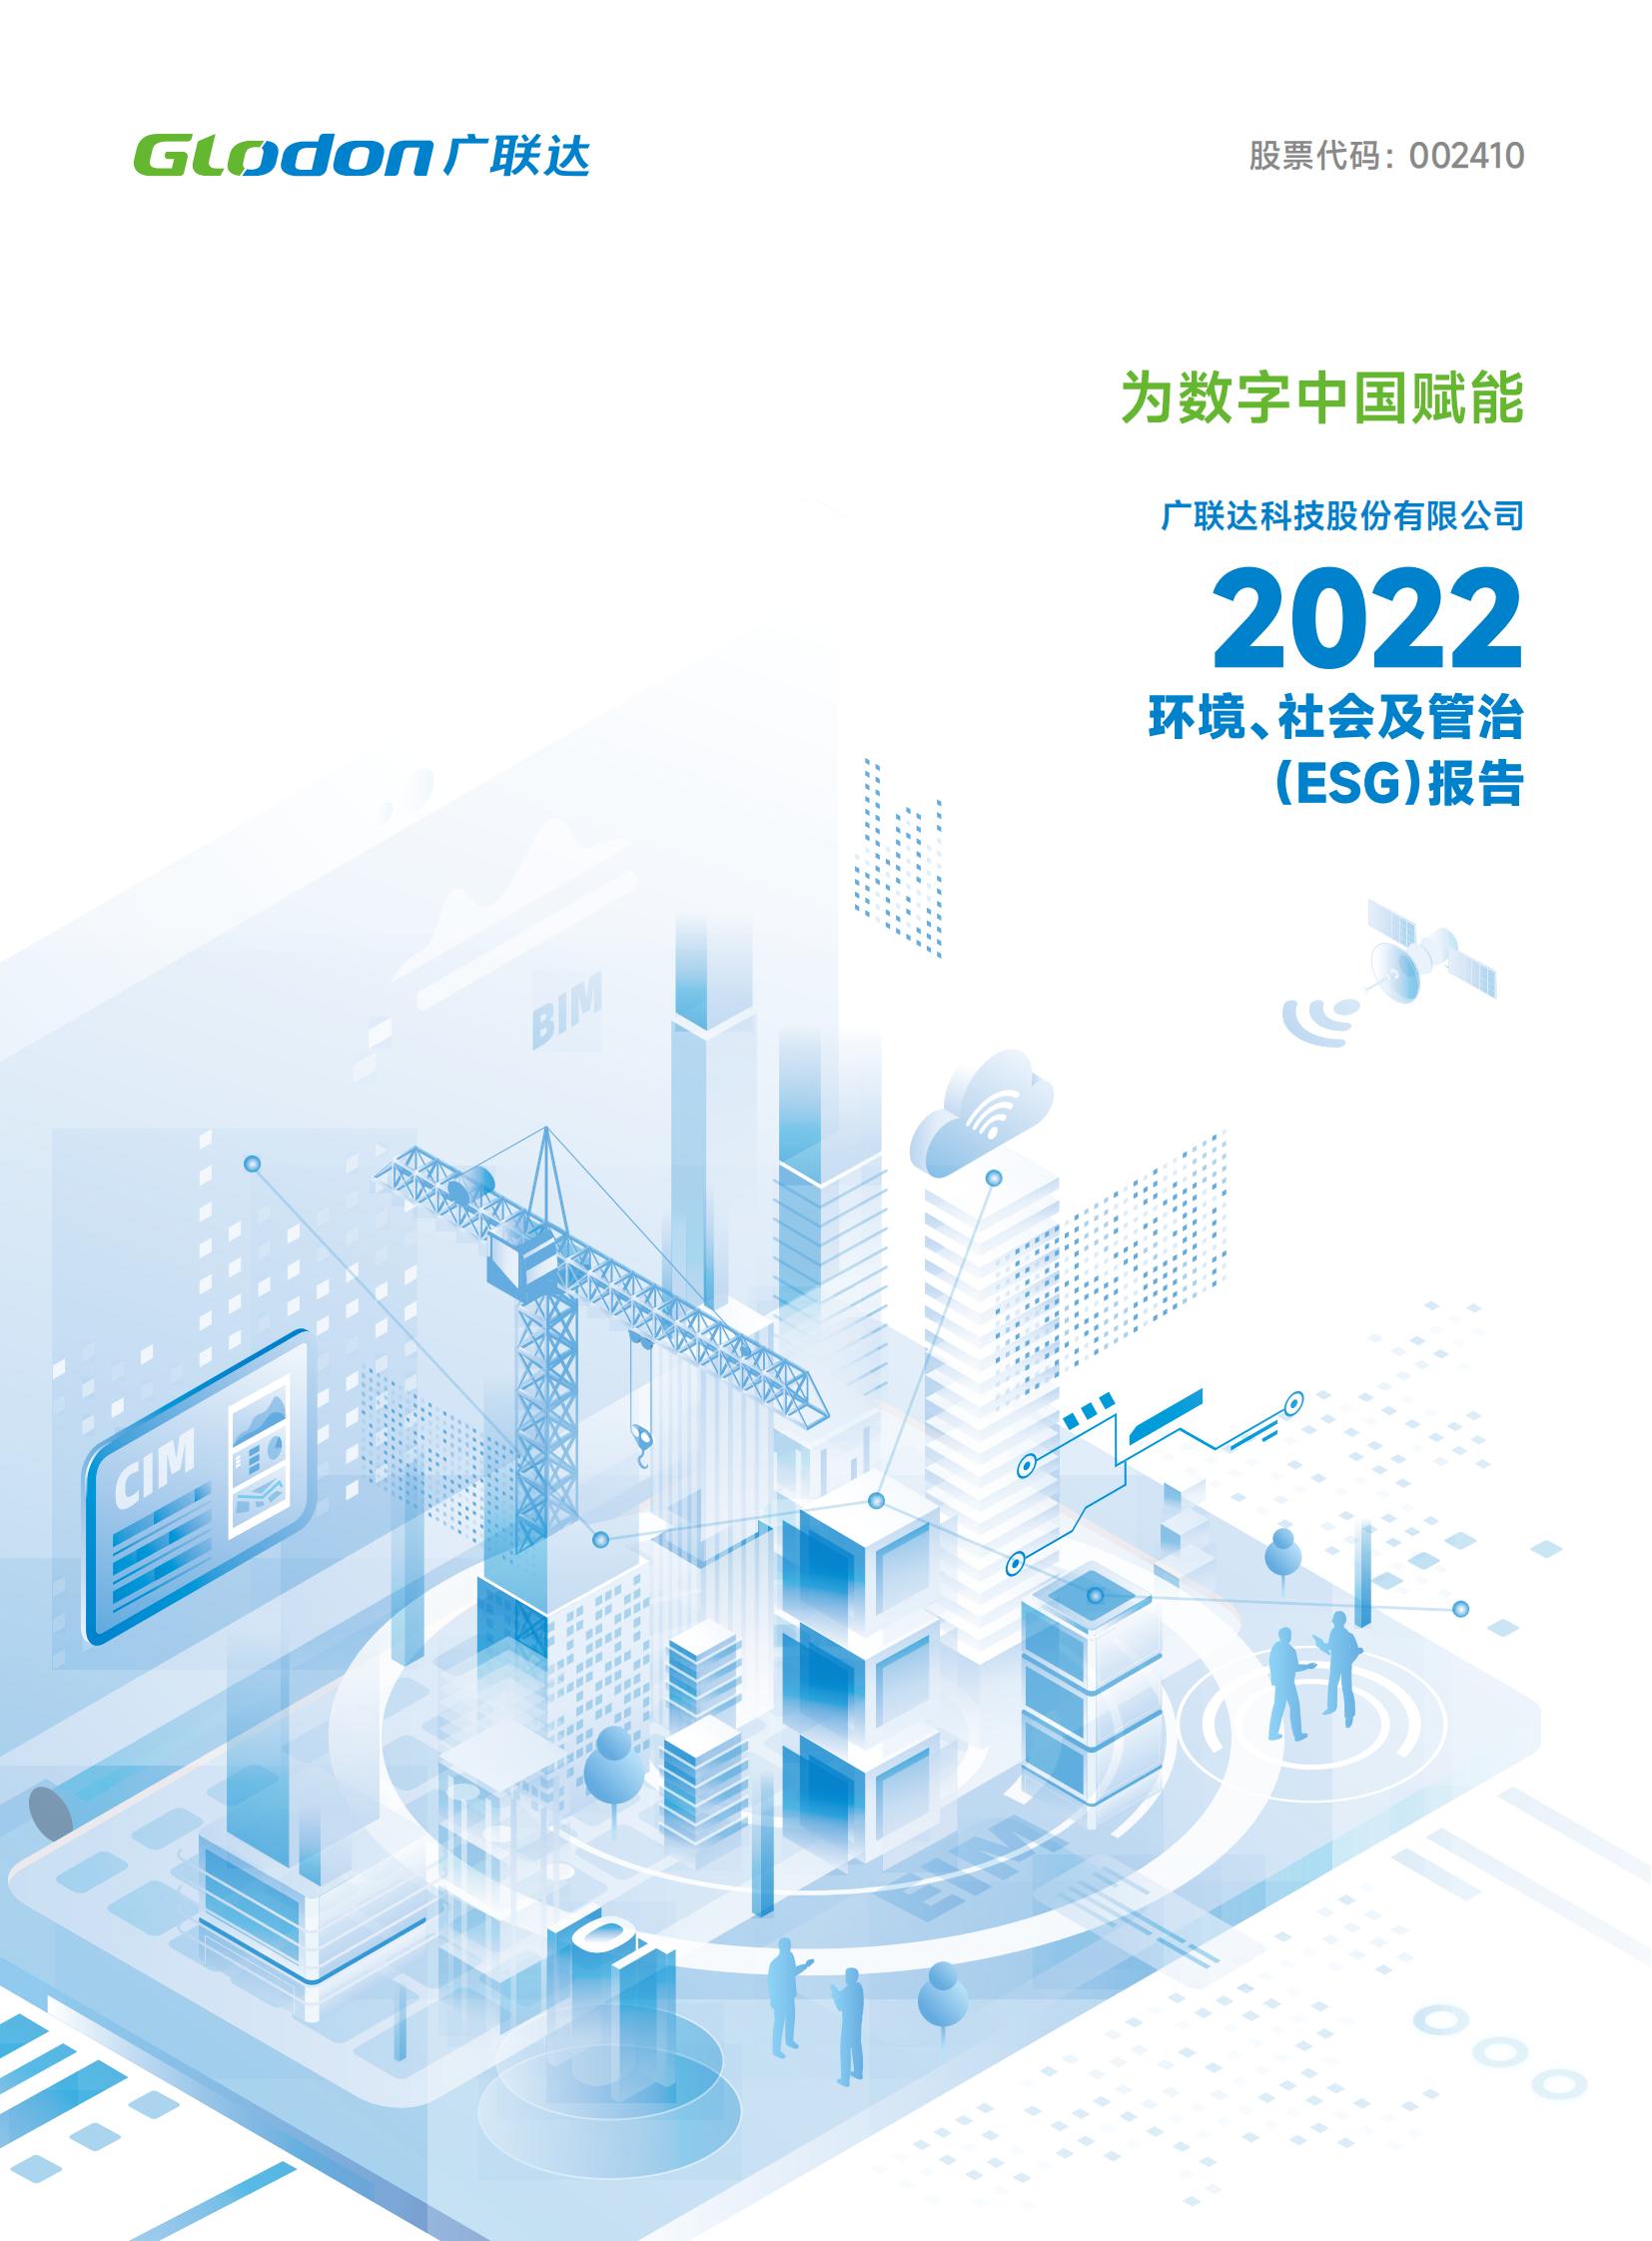 廣聯達科技股份有限公司2022年環境、社會及管治（ESG）報告-中文版